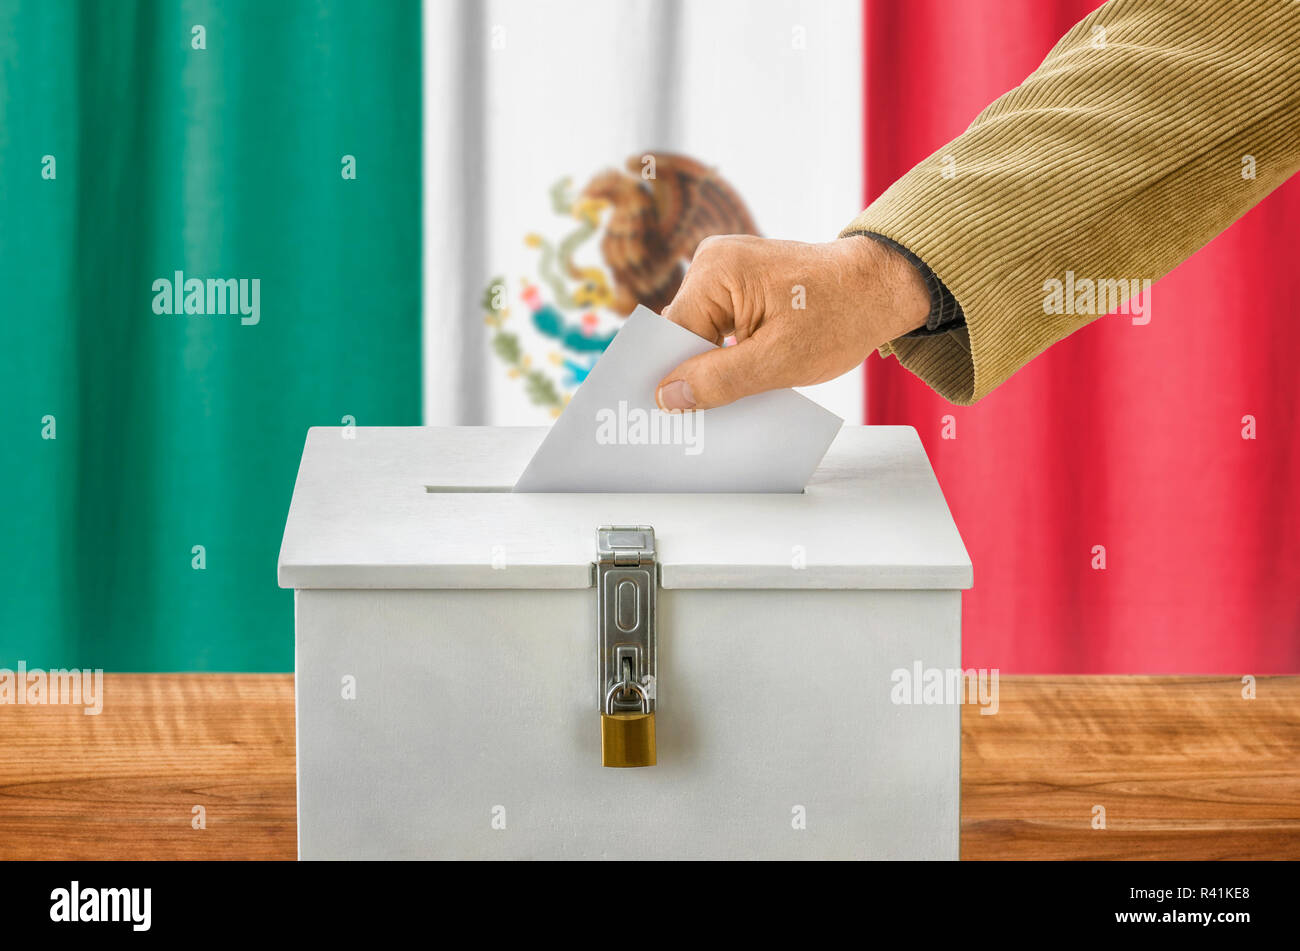 Mann wirft Stimmzettel in Urne - Mexiko Stockfoto